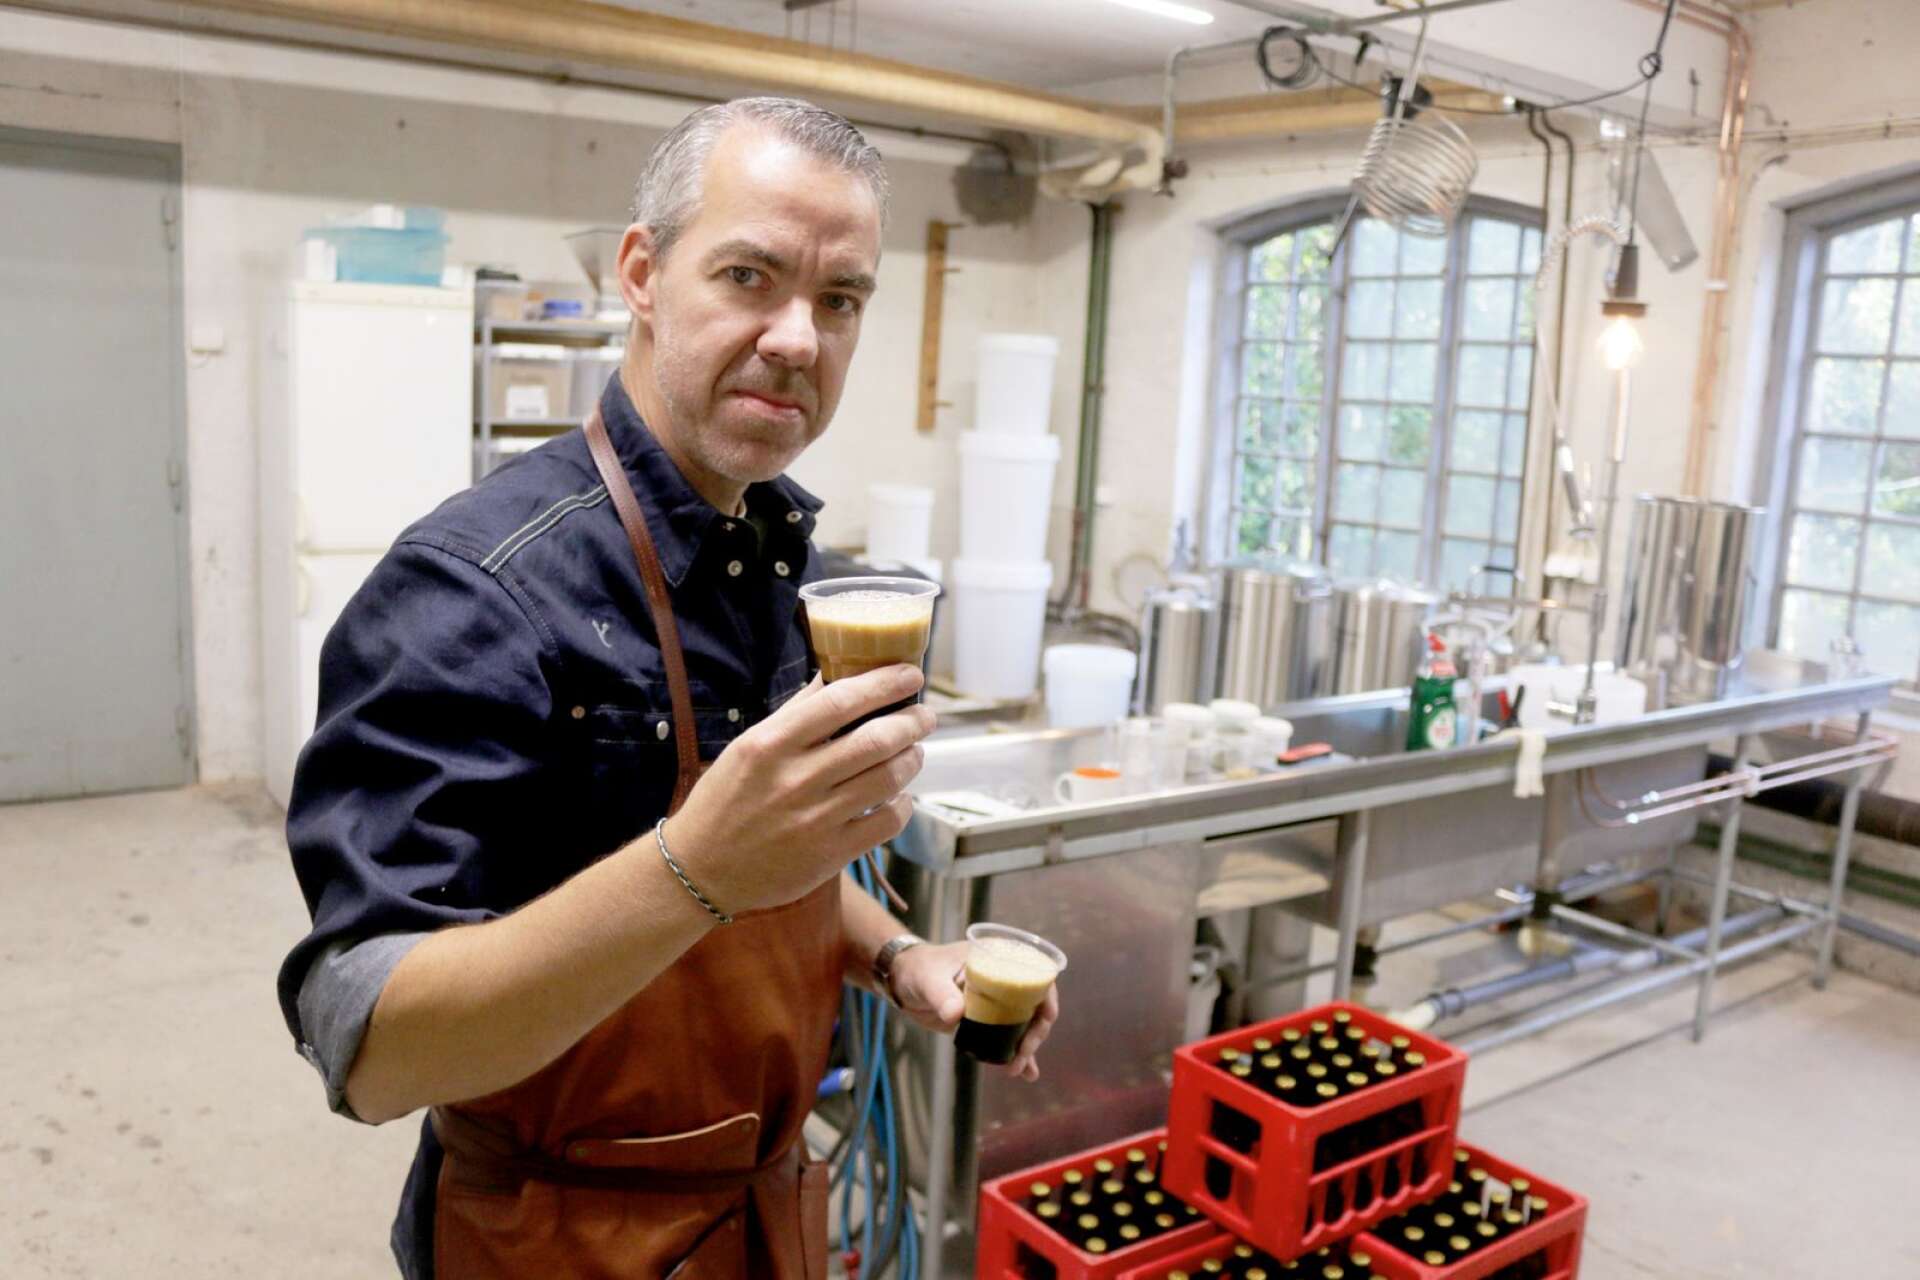 Allt fler små, lokala bryggerier har startat upp runt om i Värmland de senaste åren. Anders Nilsson på Wiksfors Bryggeri berättar varför, och avslöjar en kommande nyhet.